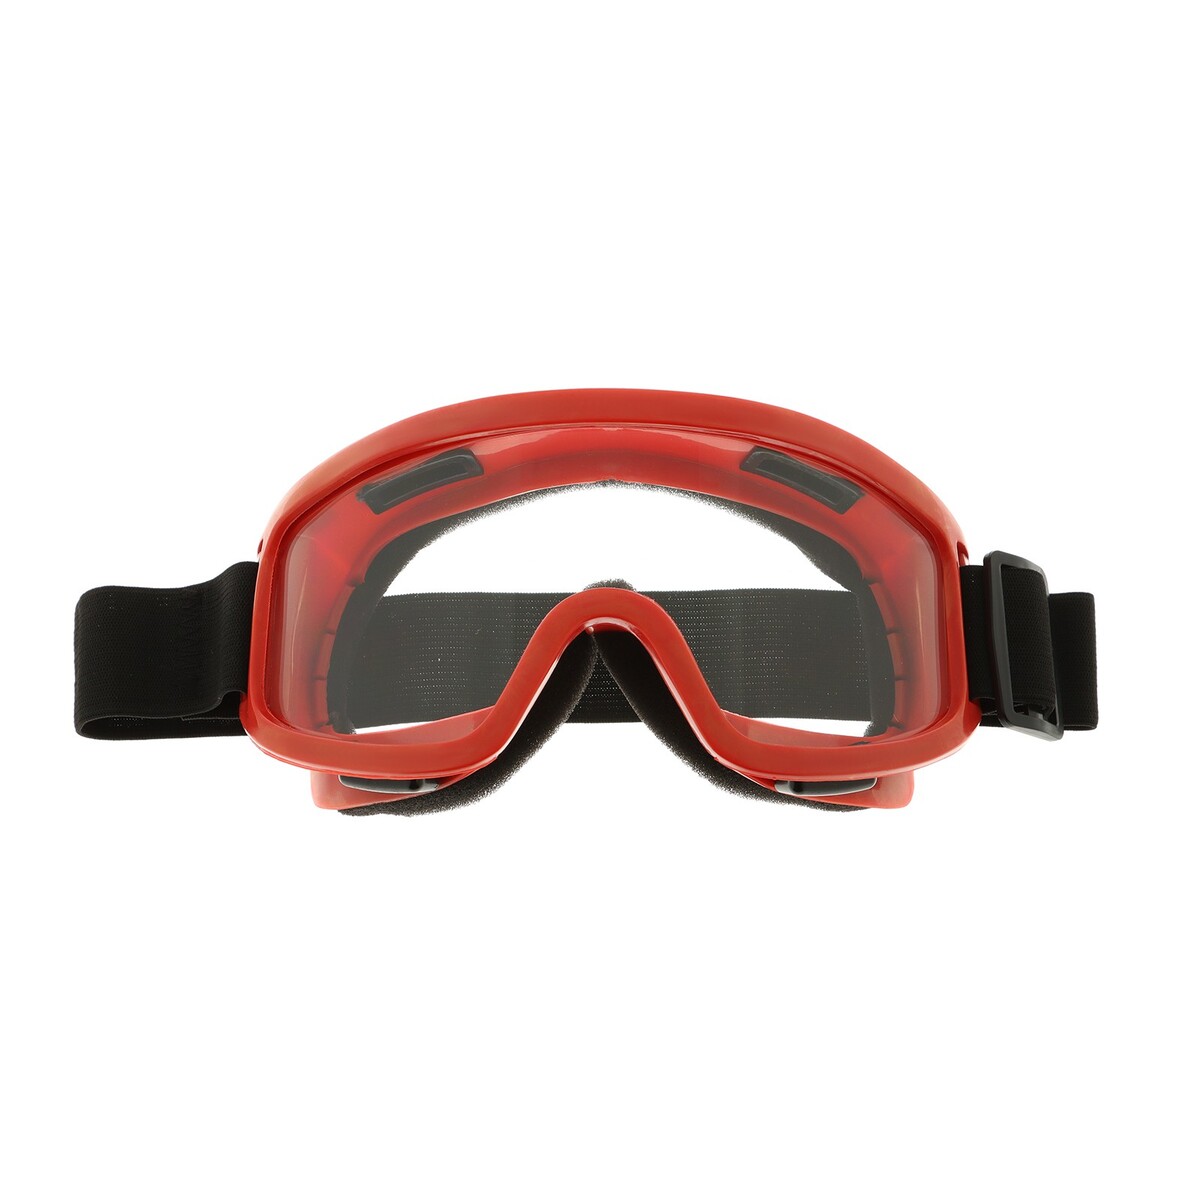 Очки-маска для езды на мототехнике, стекло прозрачное, цвет желтый очки маска для езды на мототехнике стекло прозрачное красный ом 21